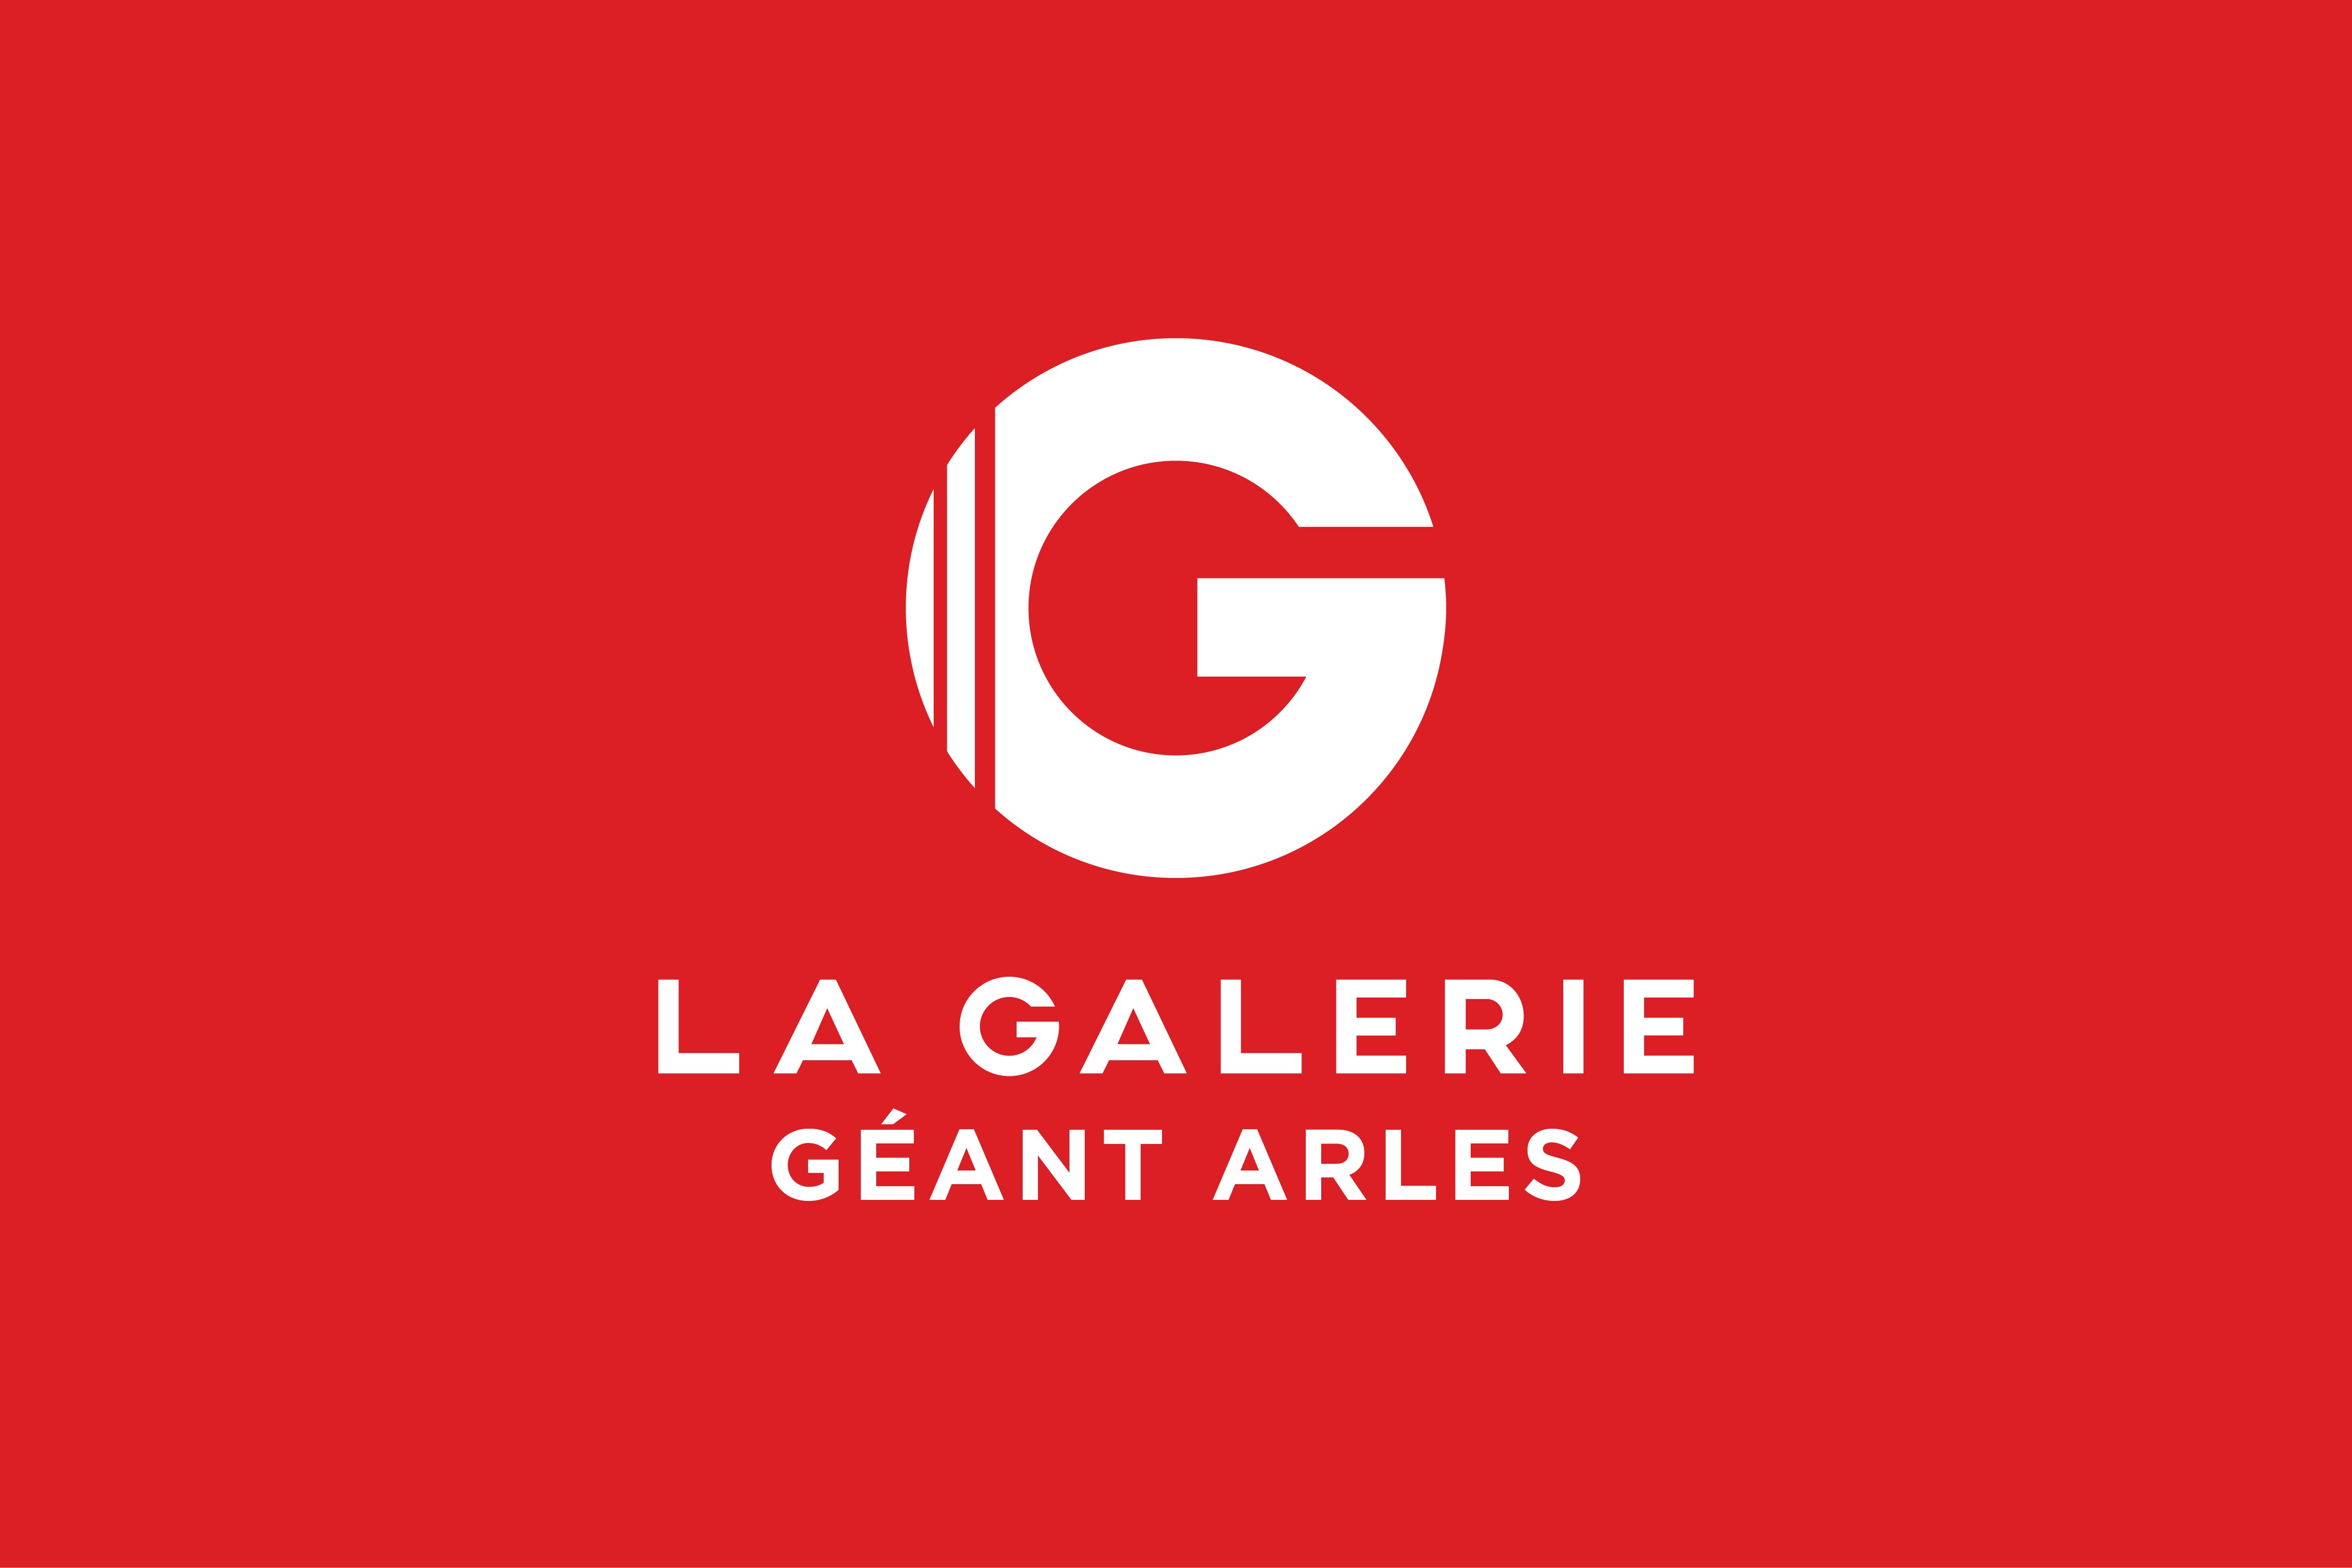 G la Galerie, logo